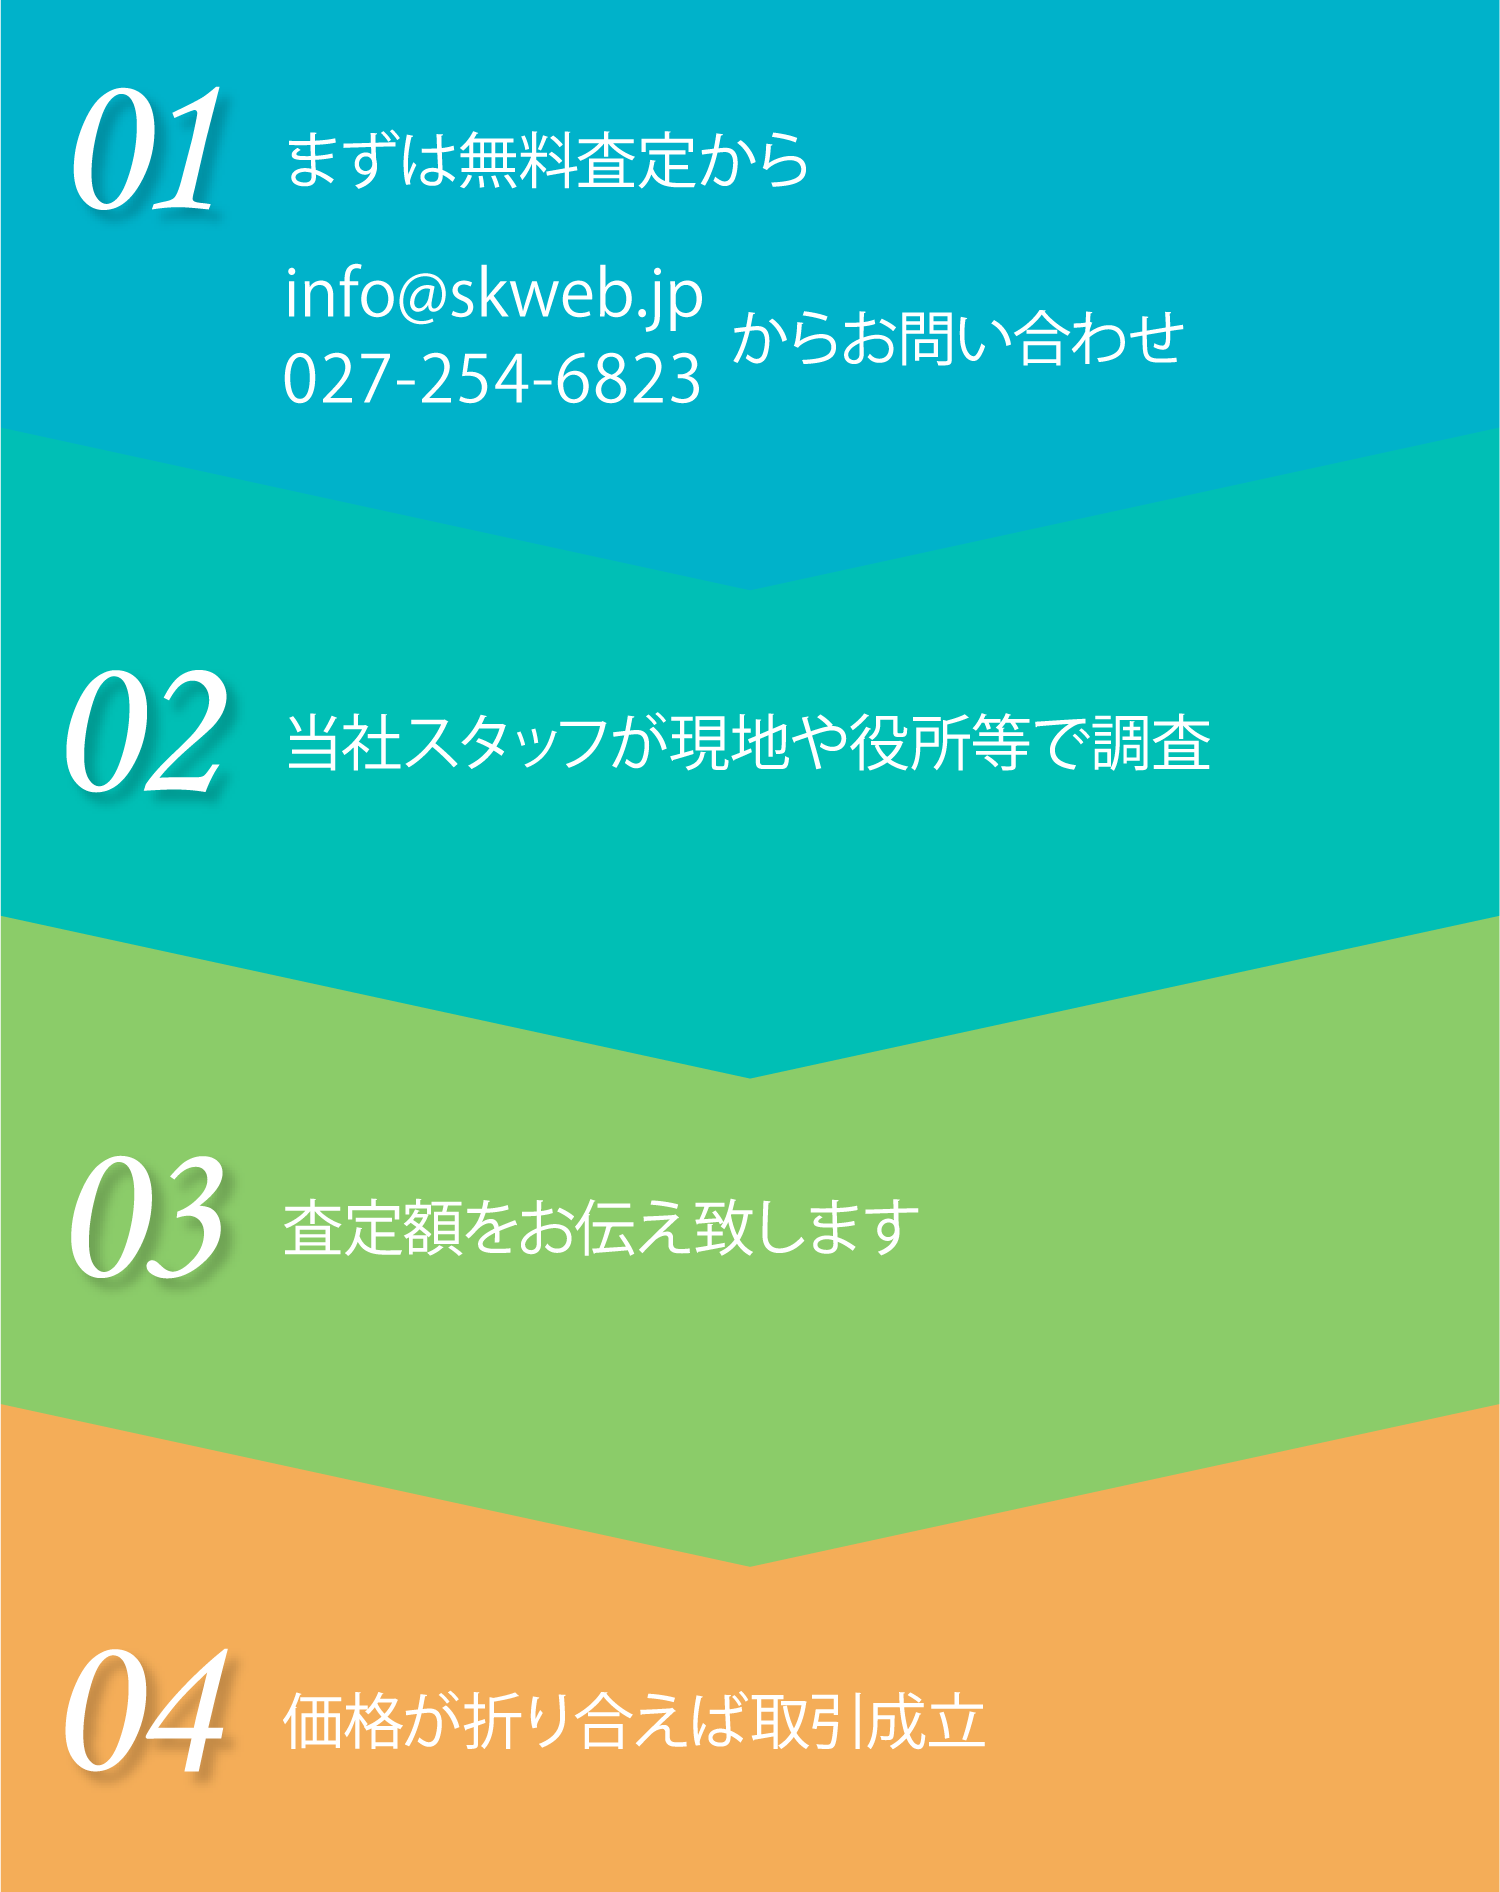 info＠skweb.jpまたは027-254-6823までお問い合わせ下さい